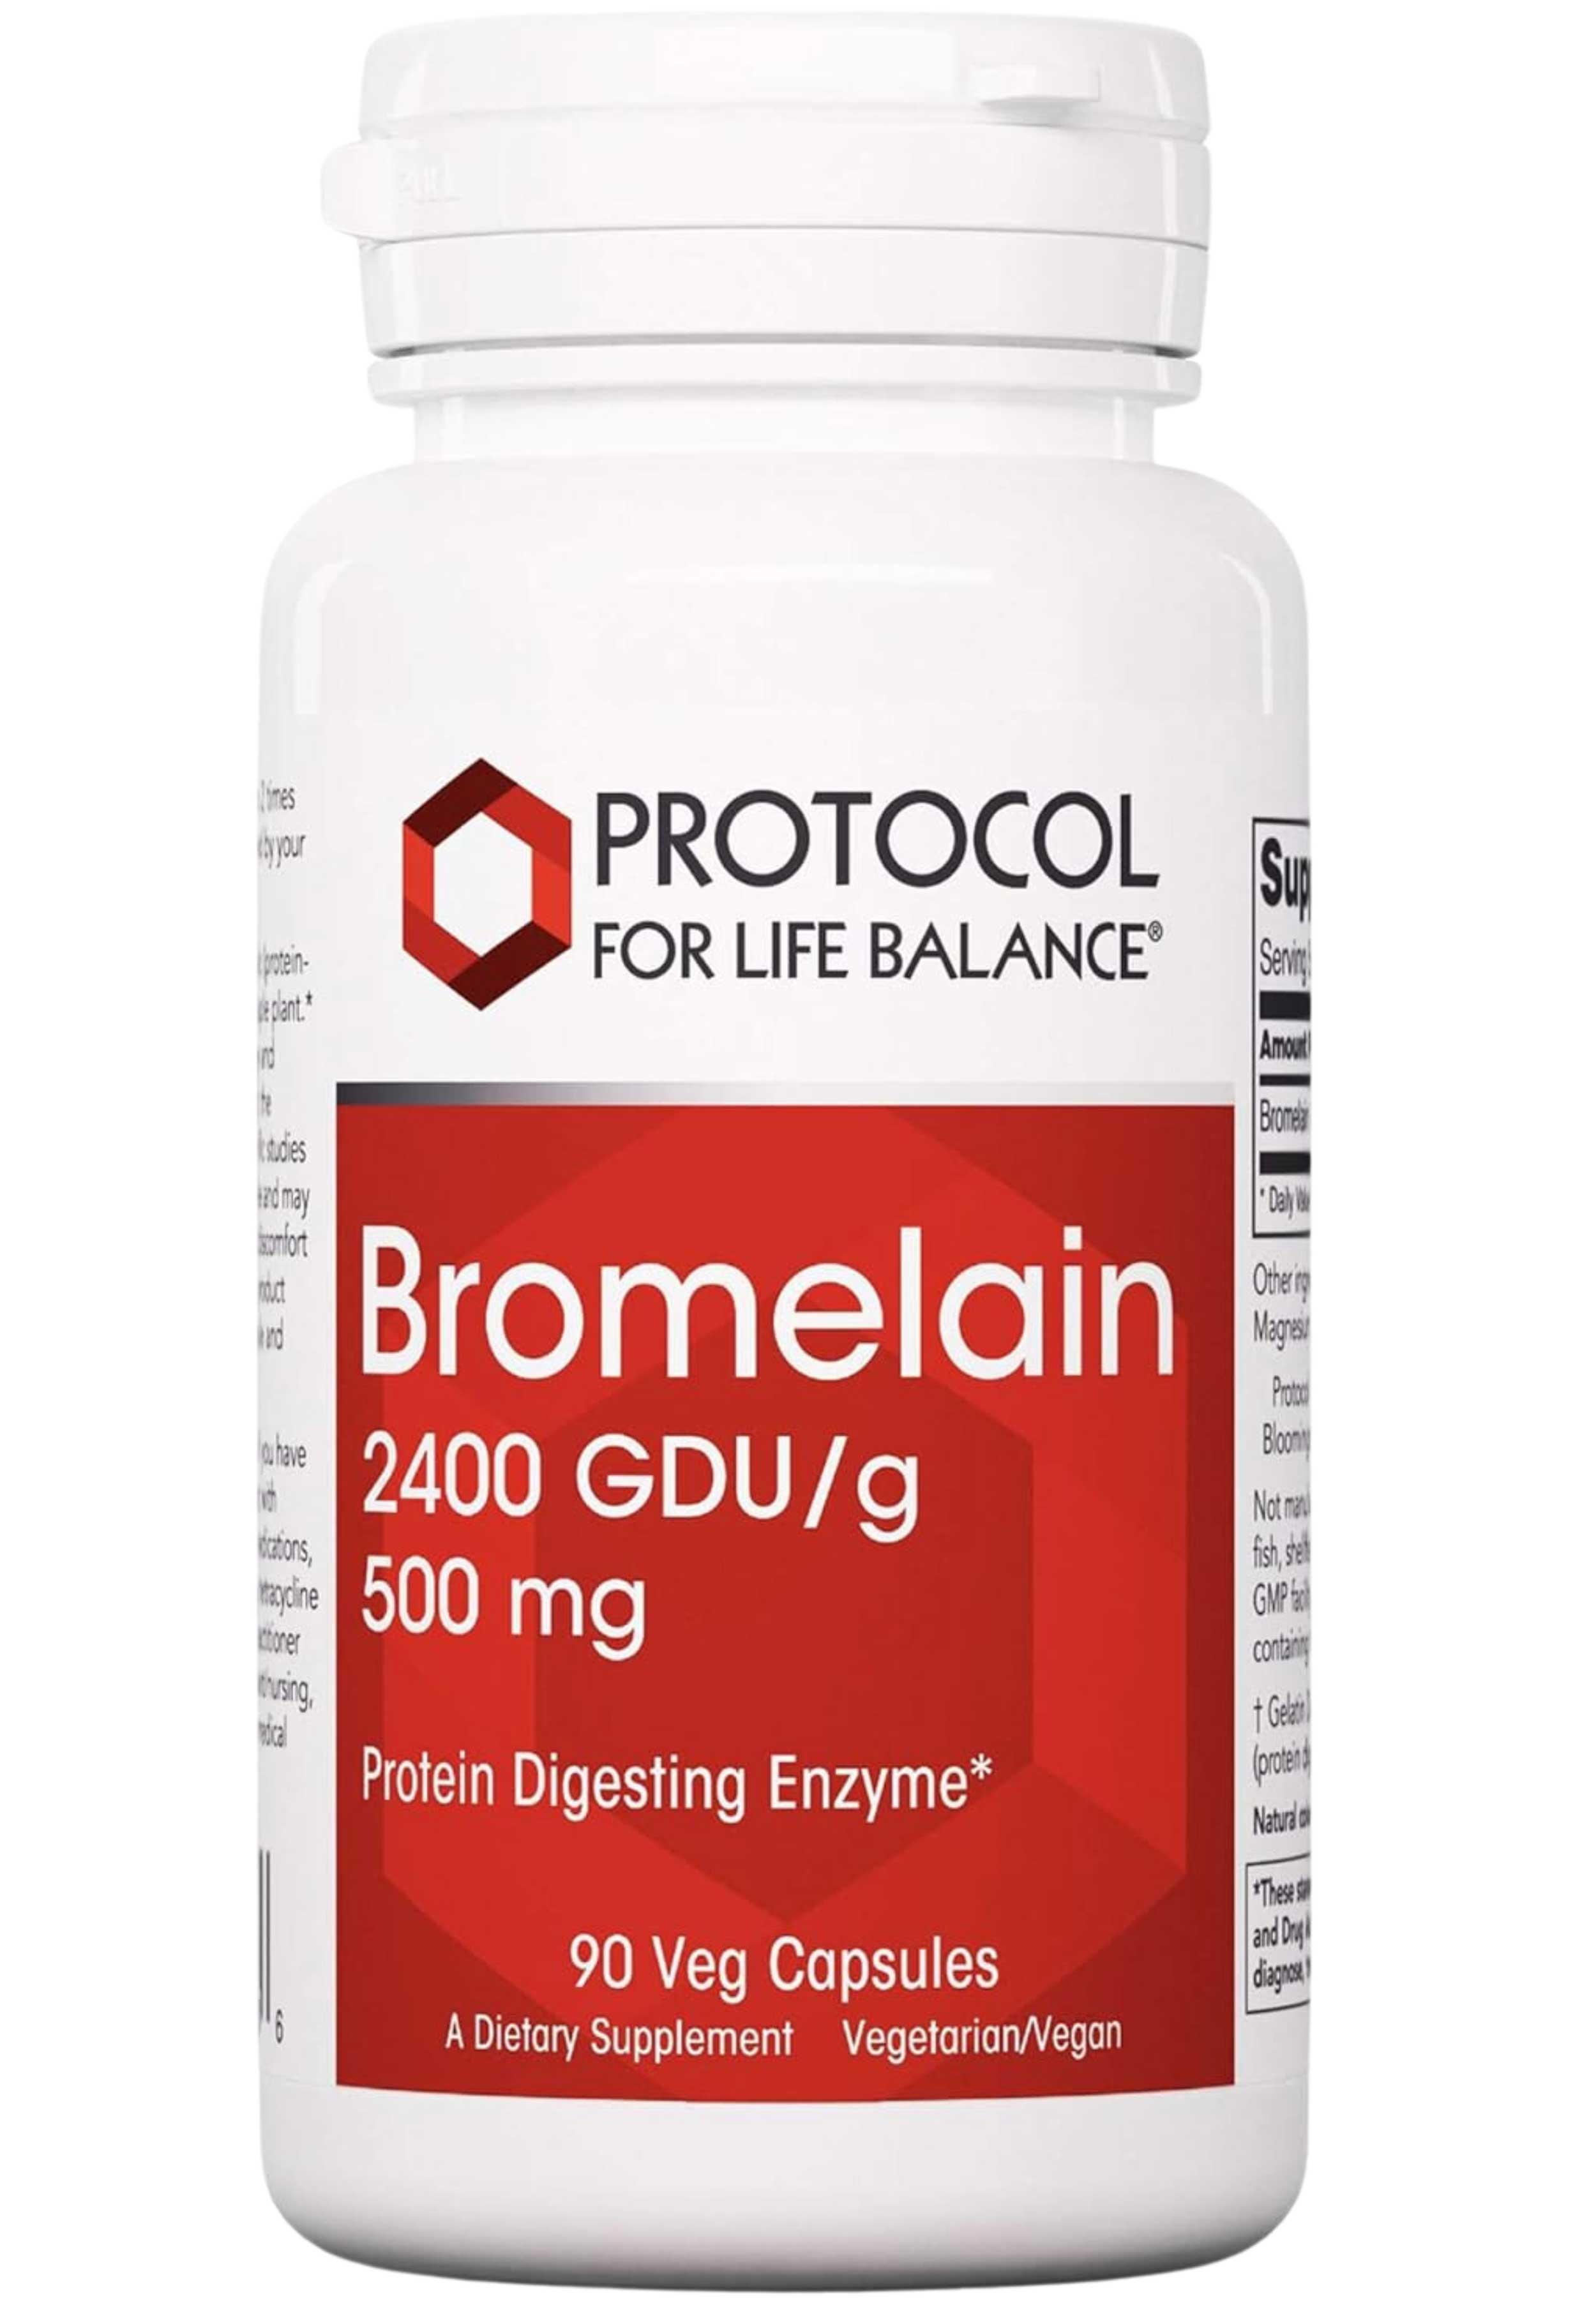 Protocol for Life Balance Bromelain